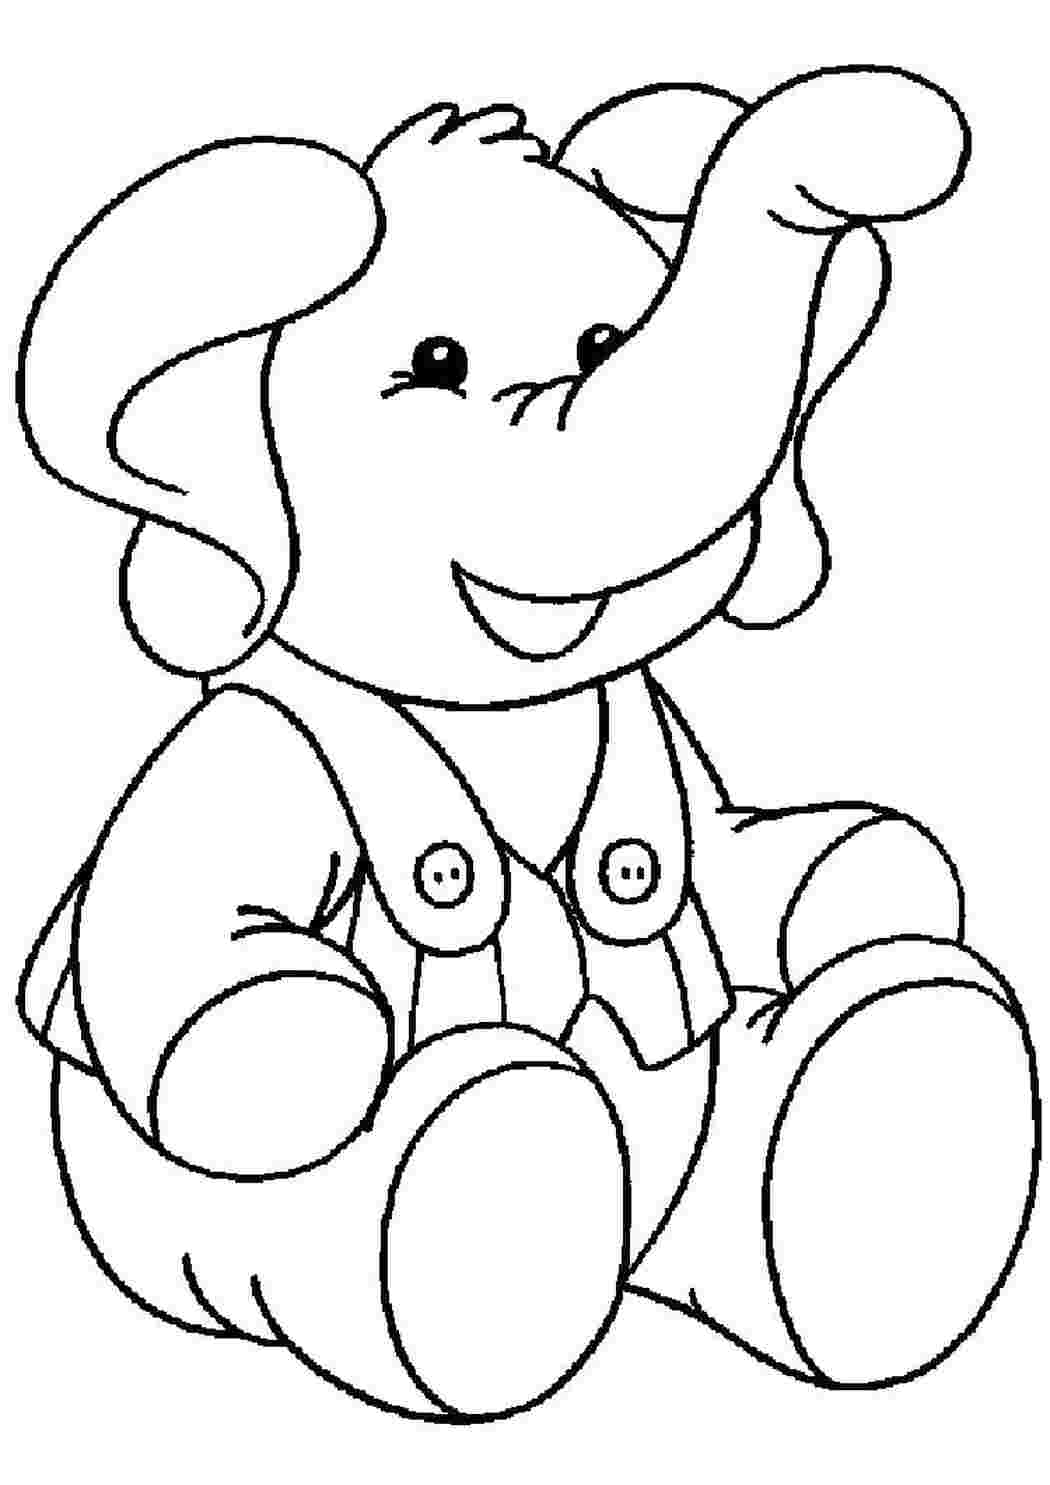 Раскраски Раскраска слон игрушечный слон слон